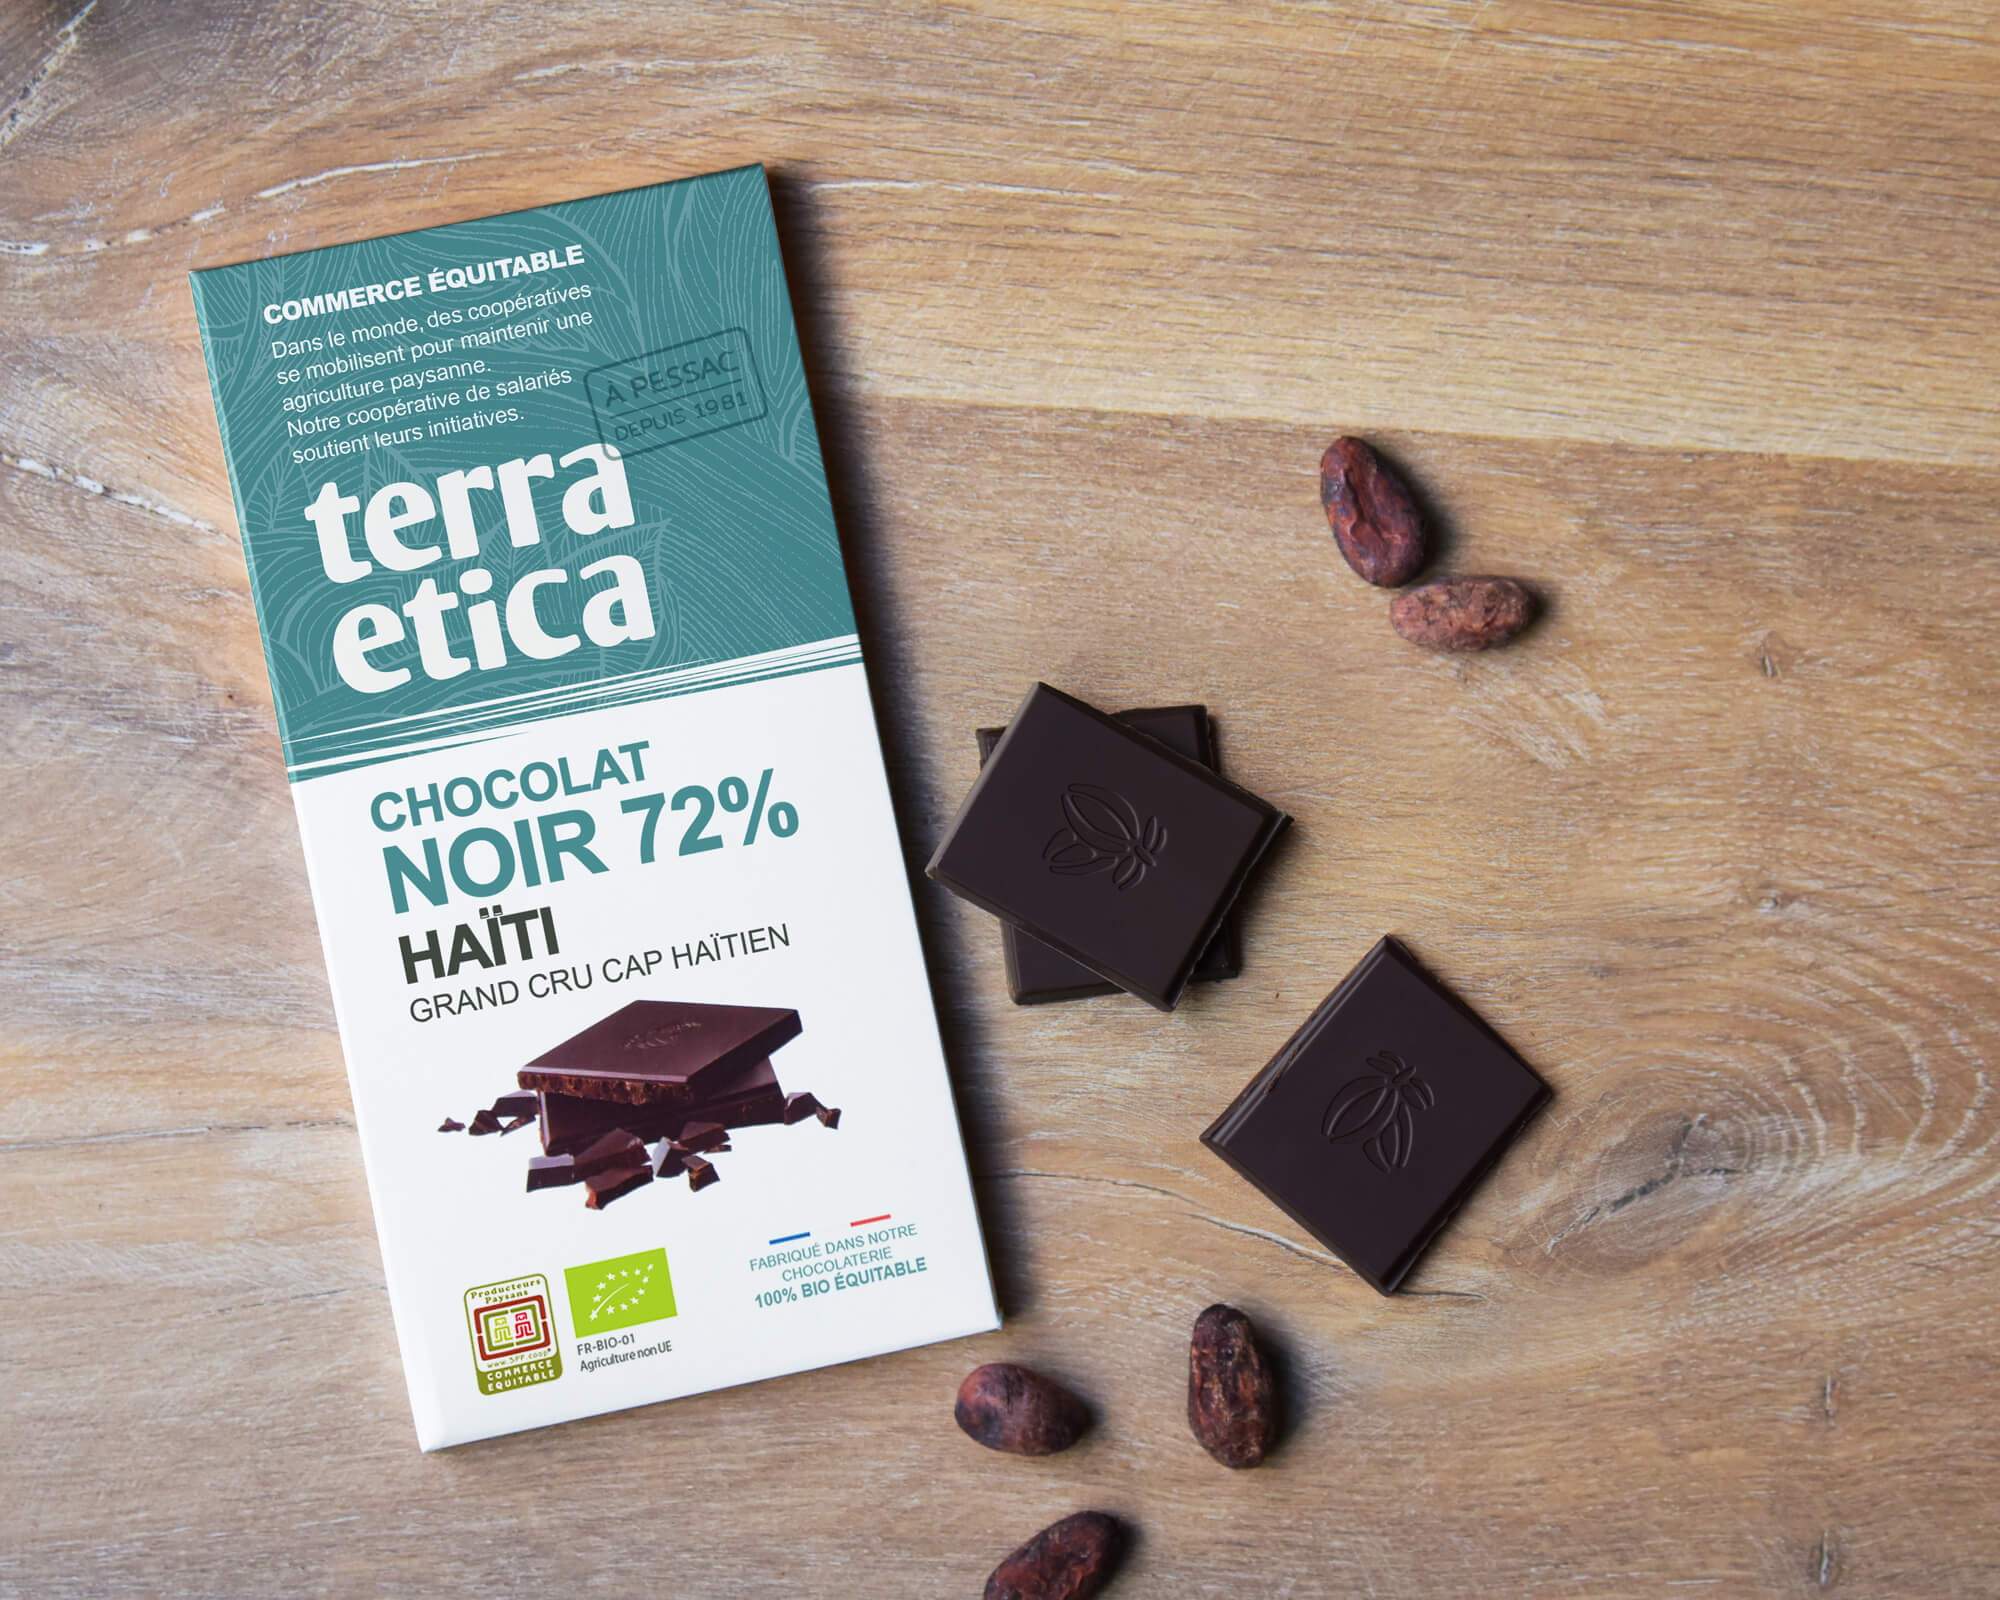 Chocolat Noir bio et équitable 72% cacao Haïti I Terra Etica